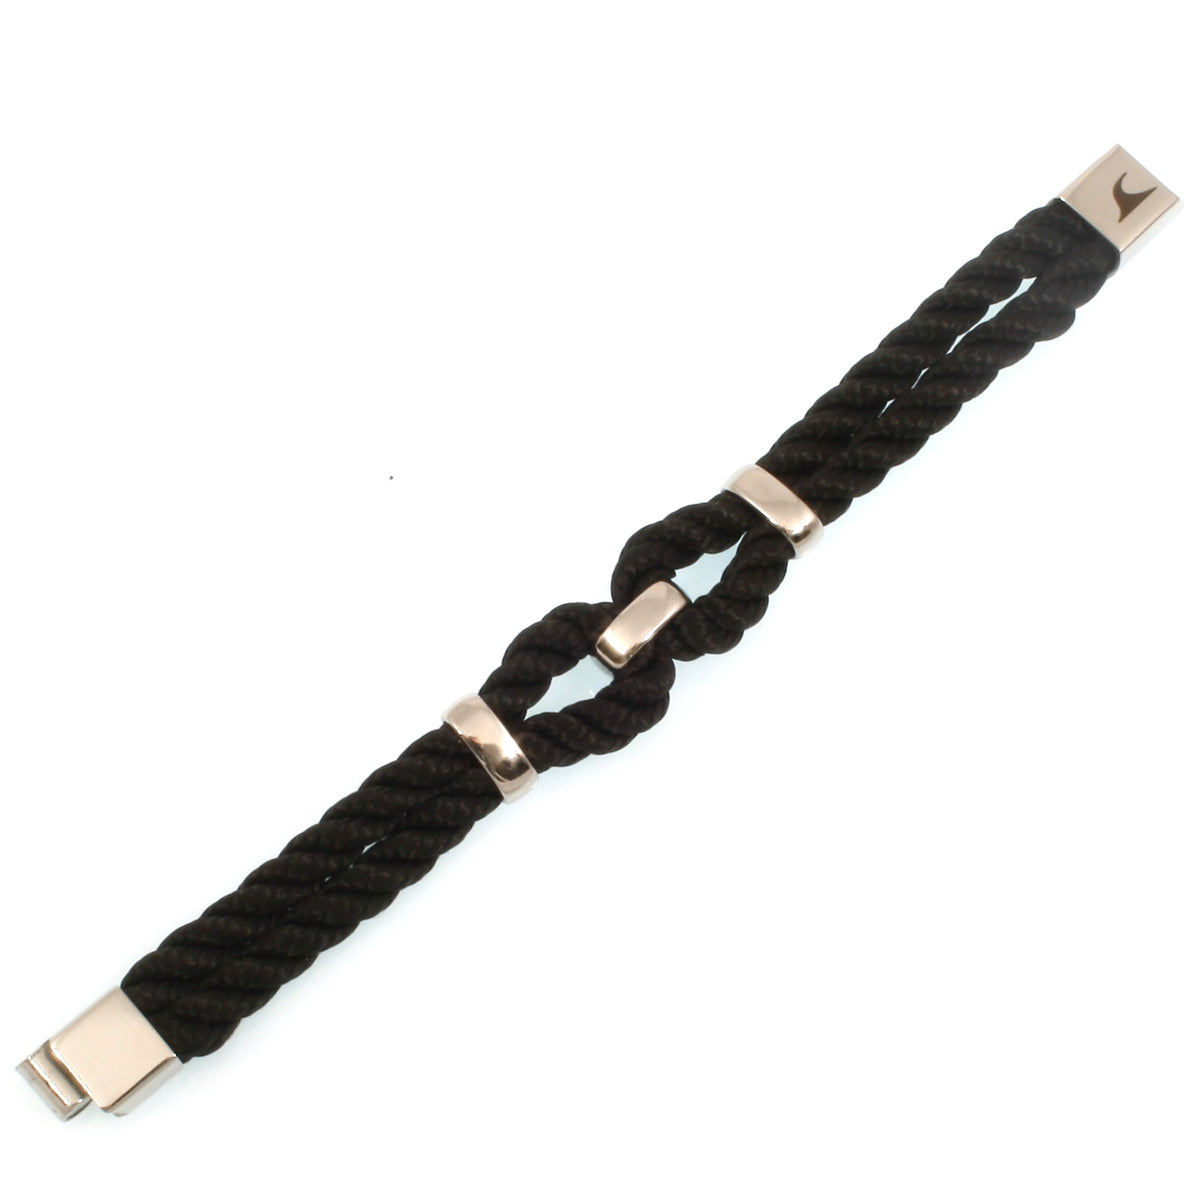 Damen-Segeltau-armband-roma-schwarz-kordel-geflochten-Edelstahlverschluss-detail-wavepirate-shop-k